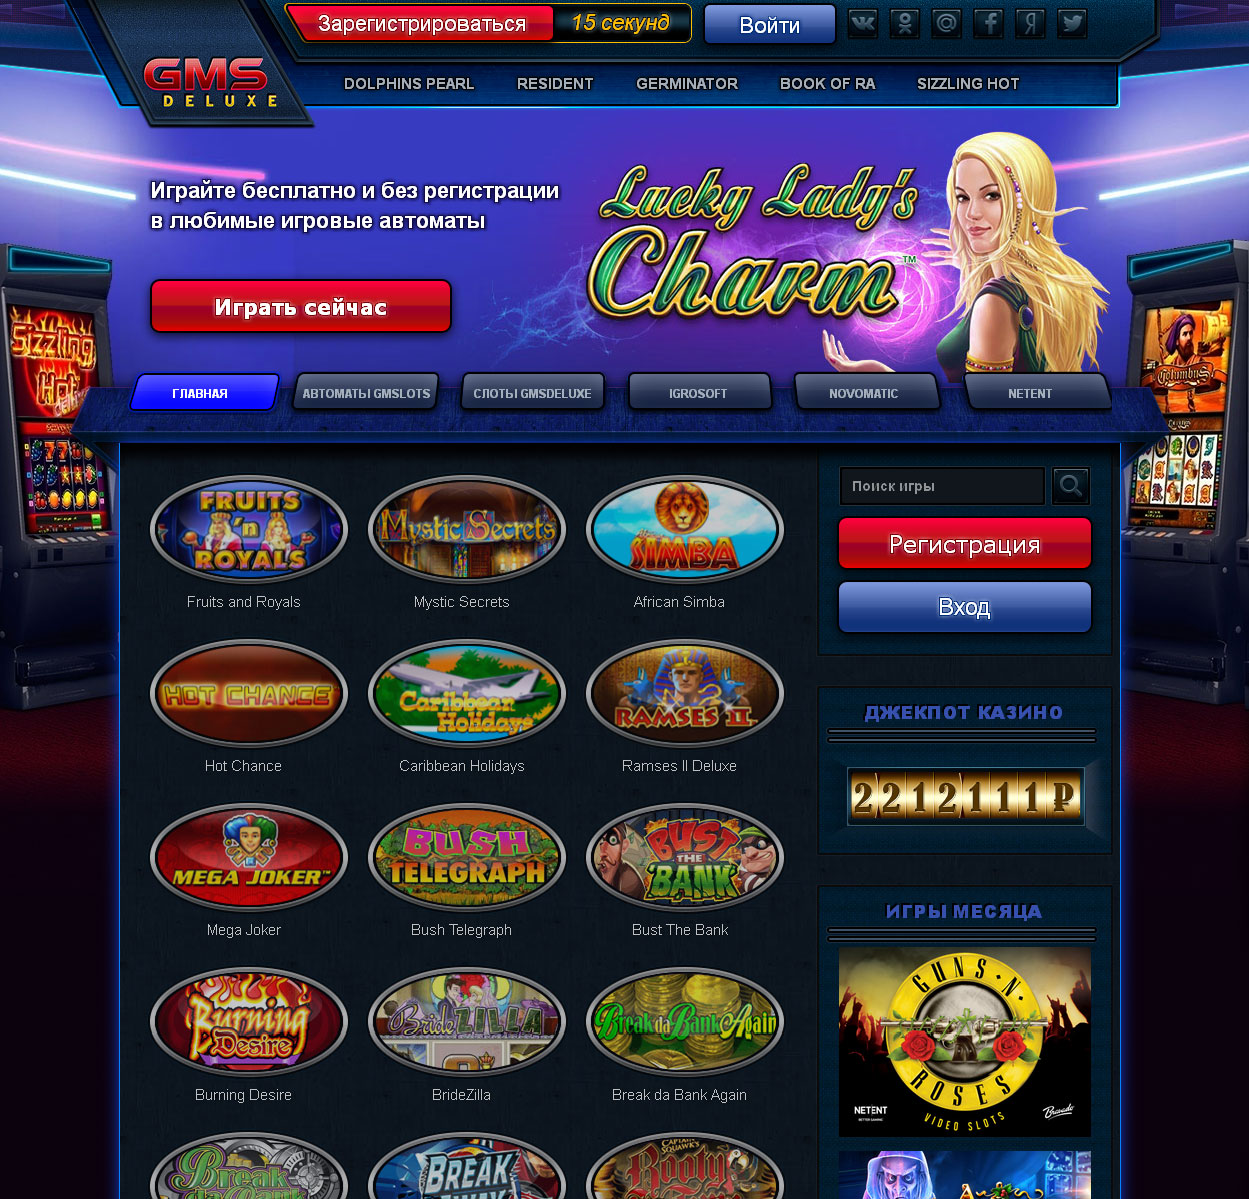 Игровые автоматы в казино GMSlots Deluxe